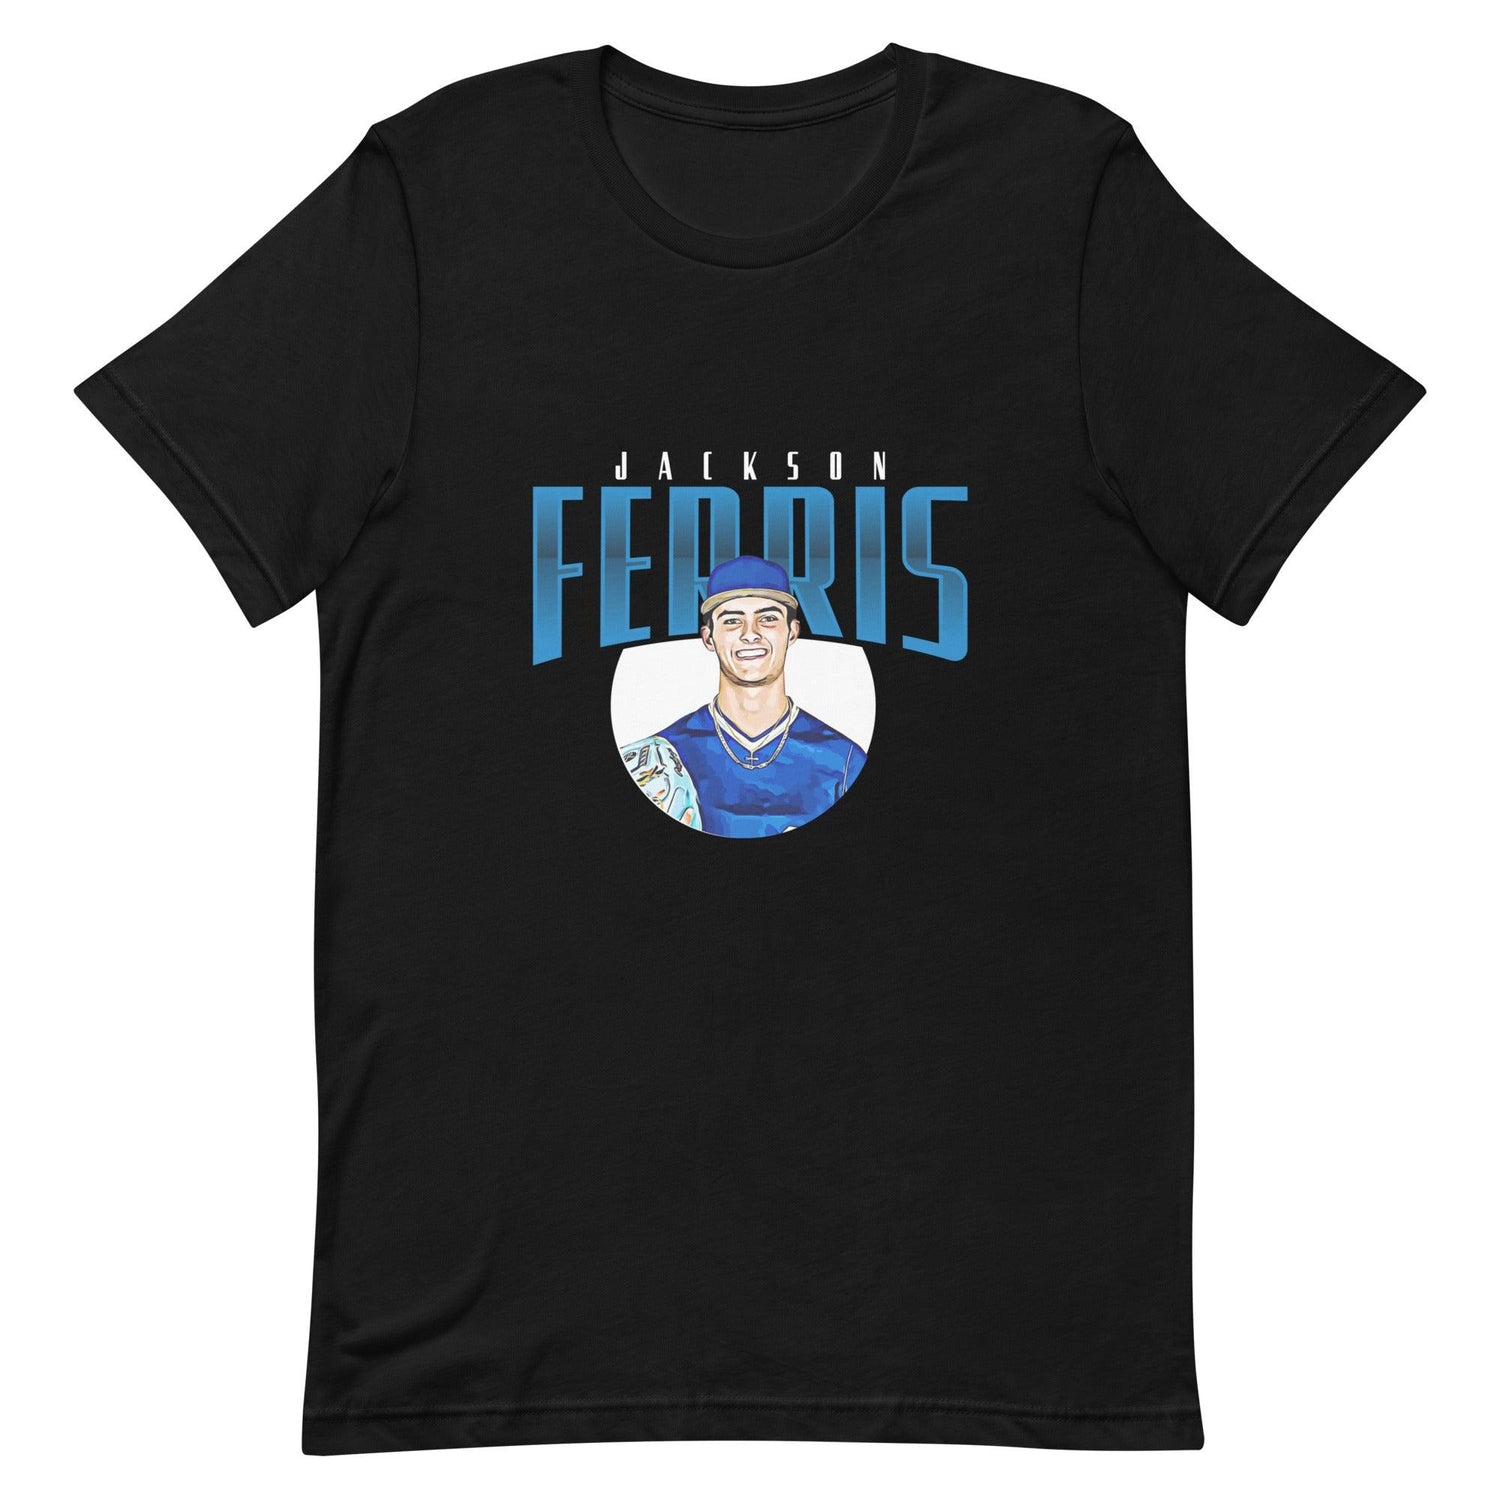 Jackson Ferris “Essential” t-shirt - Fan Arch